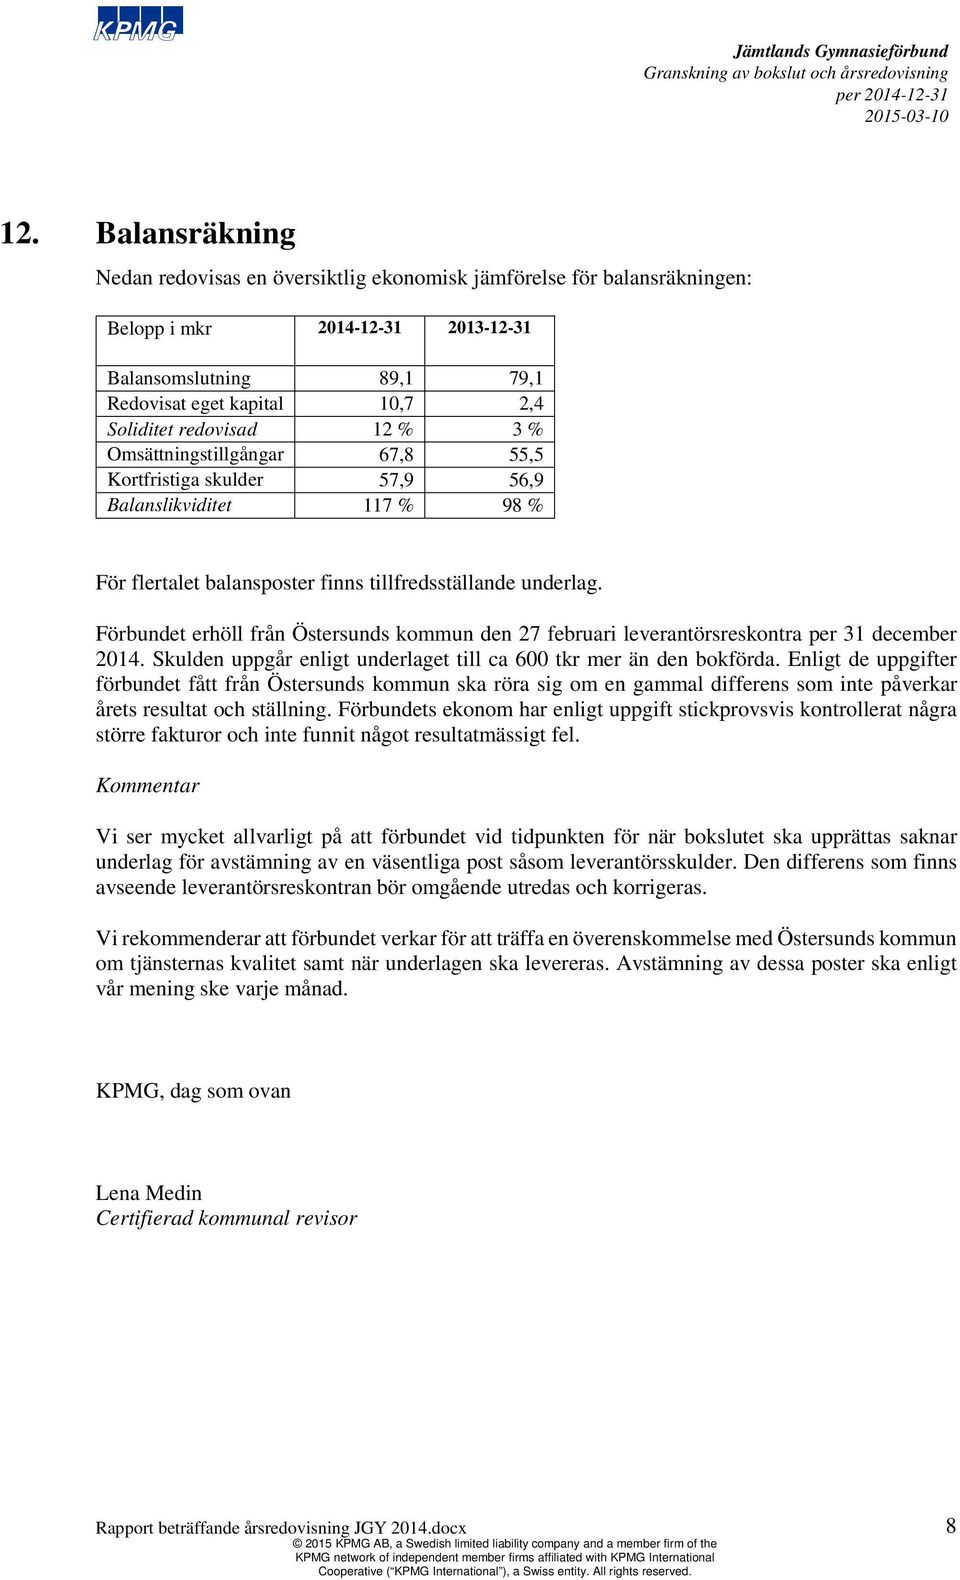 Förbundet erhöll från Östersunds kommun den 27 februari leverantörsreskontra per 31 december 2014. Skulden uppgår enligt underlaget till ca 600 tkr mer än den bokförda.